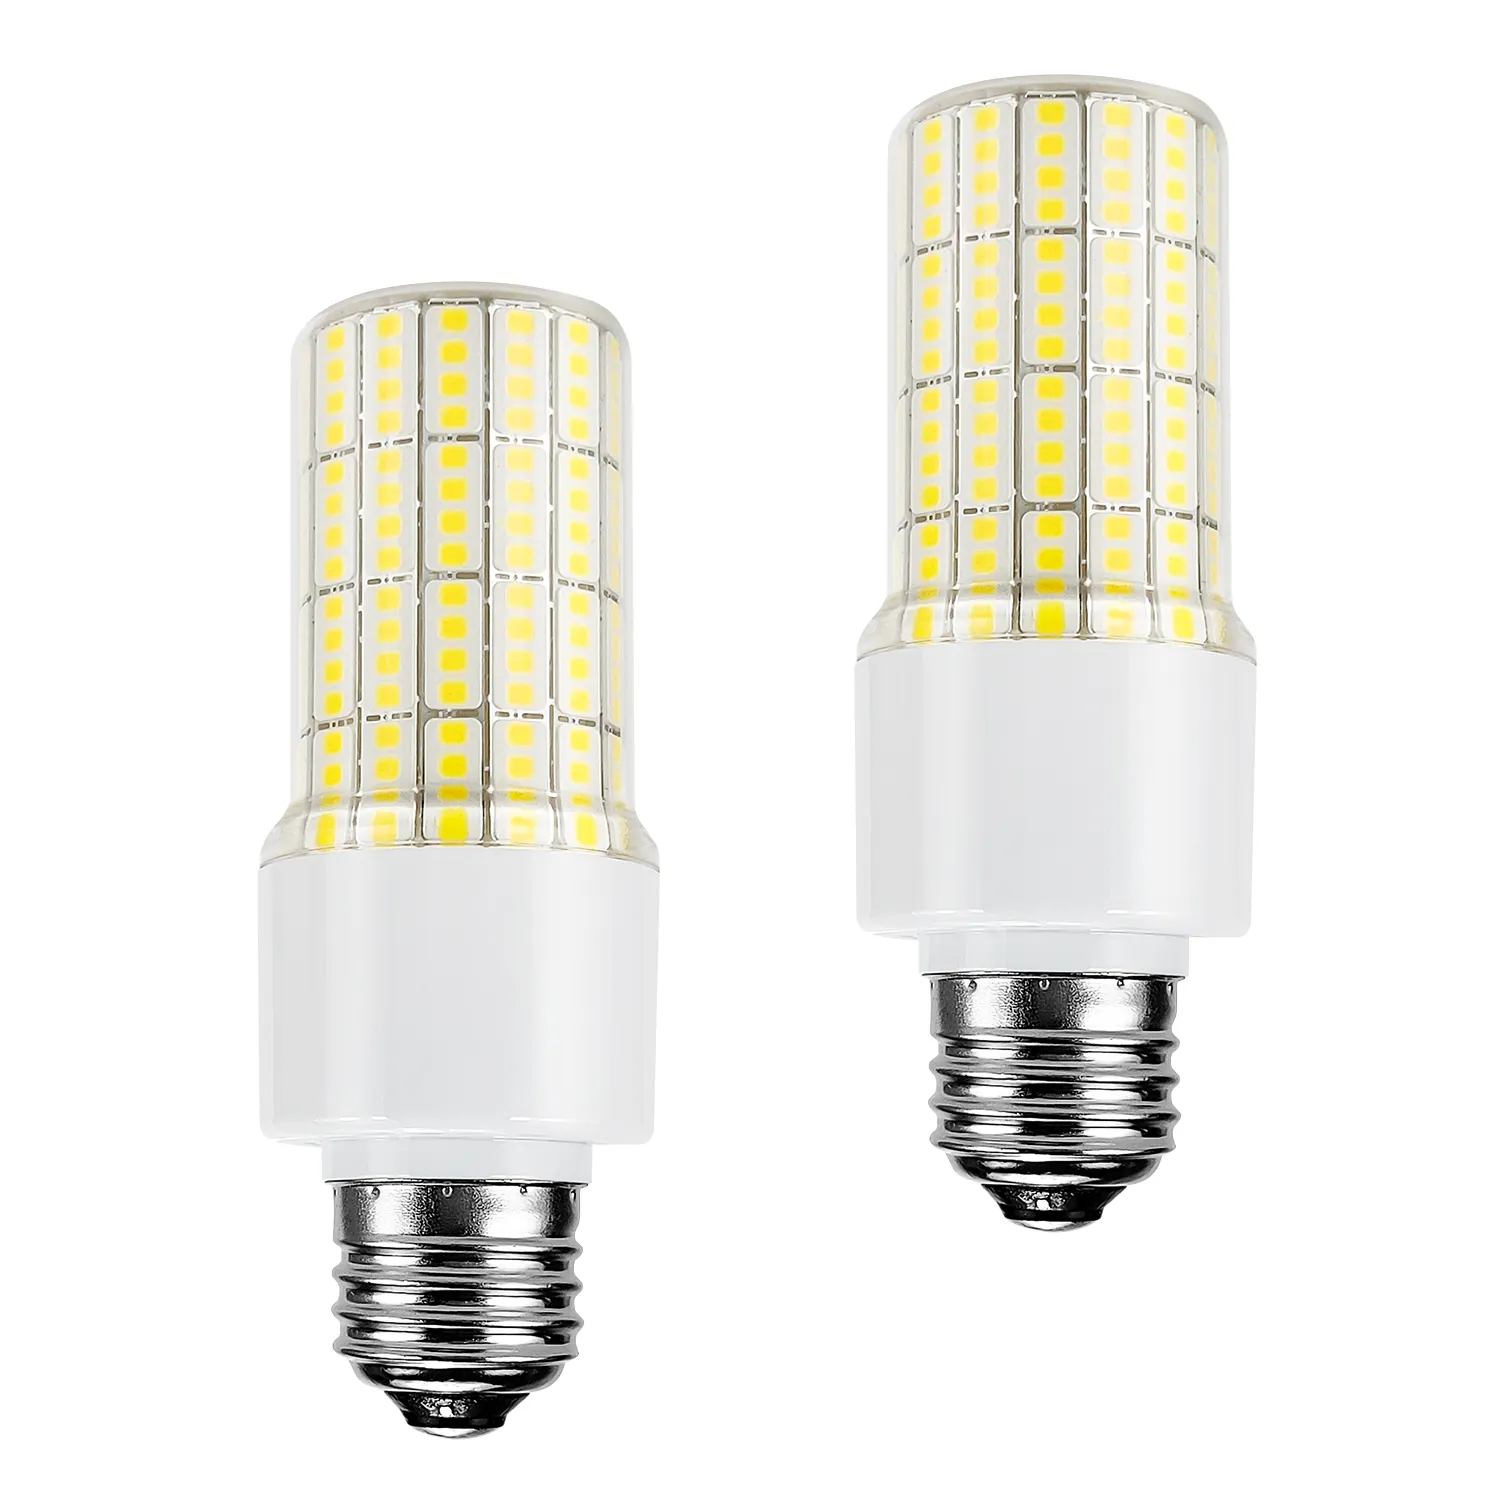 Lâmpada LED de milho SMD2835 6W 20W adequada para iluminação doméstica, lâmpada LED de milho de alto lúmen E26 e27 LED de milho à prova d'água